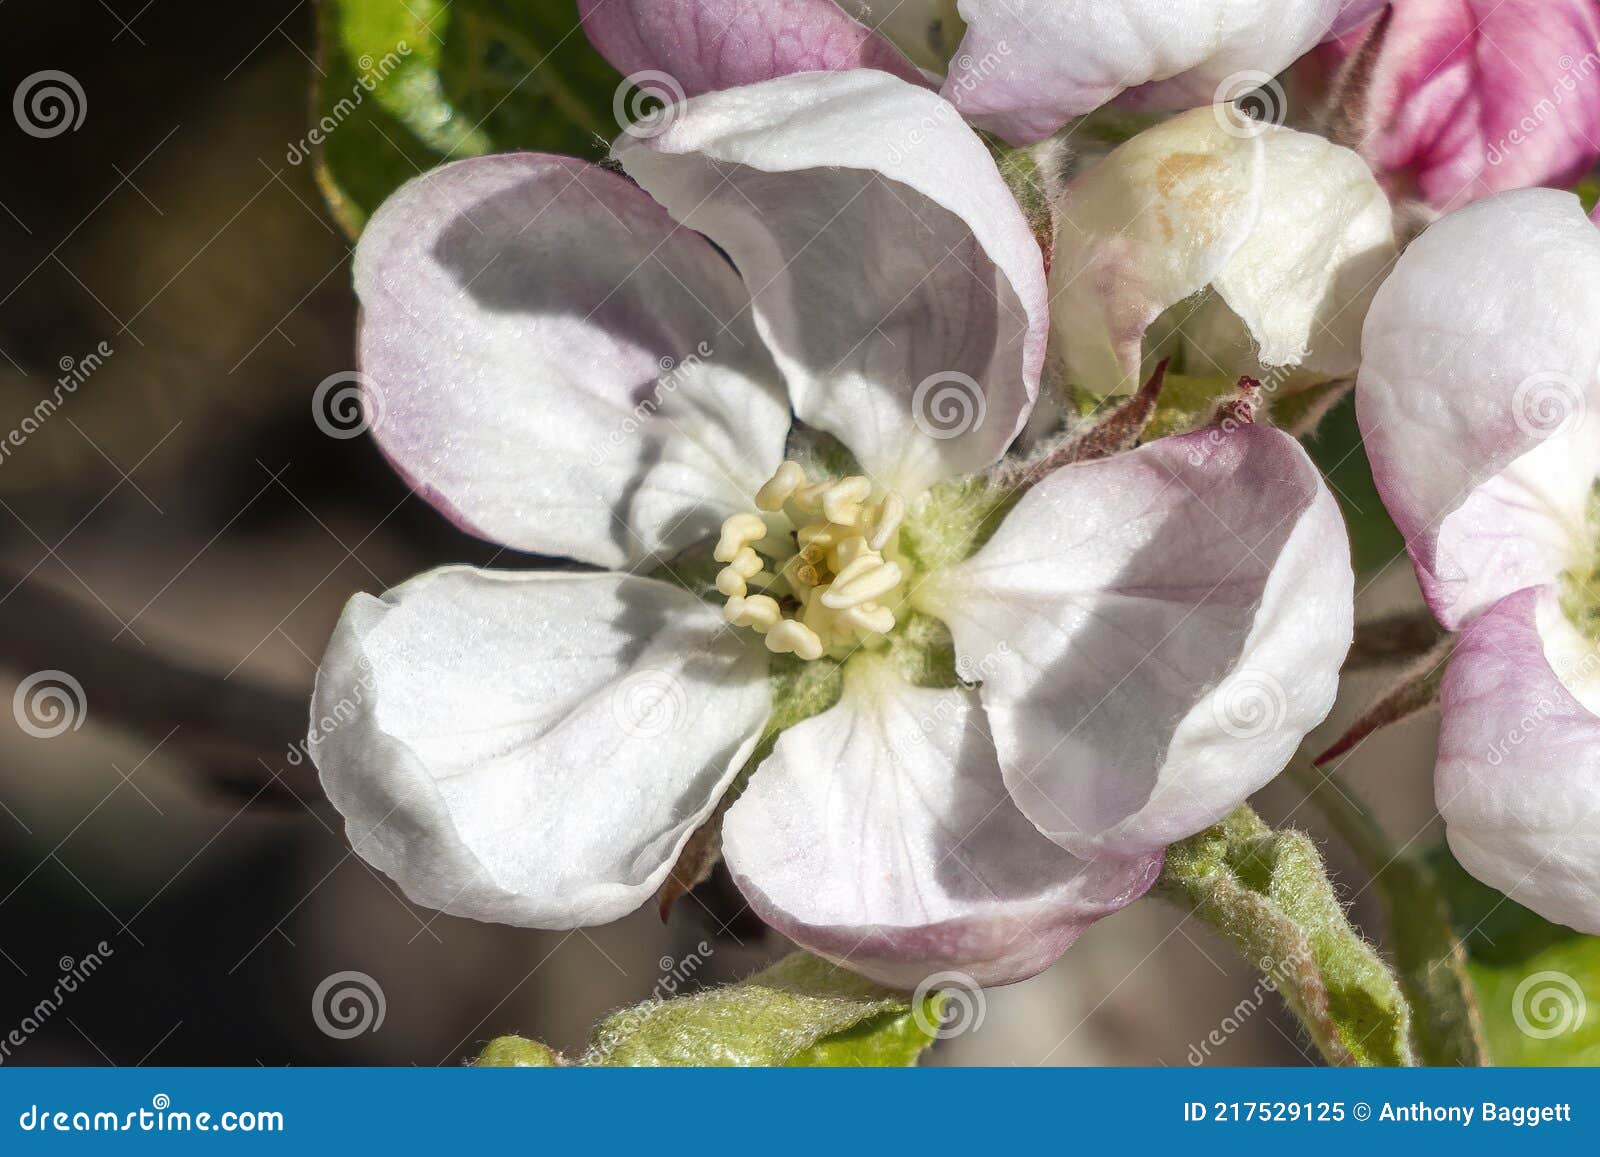 malus domestica `scrumptious` apple blossom